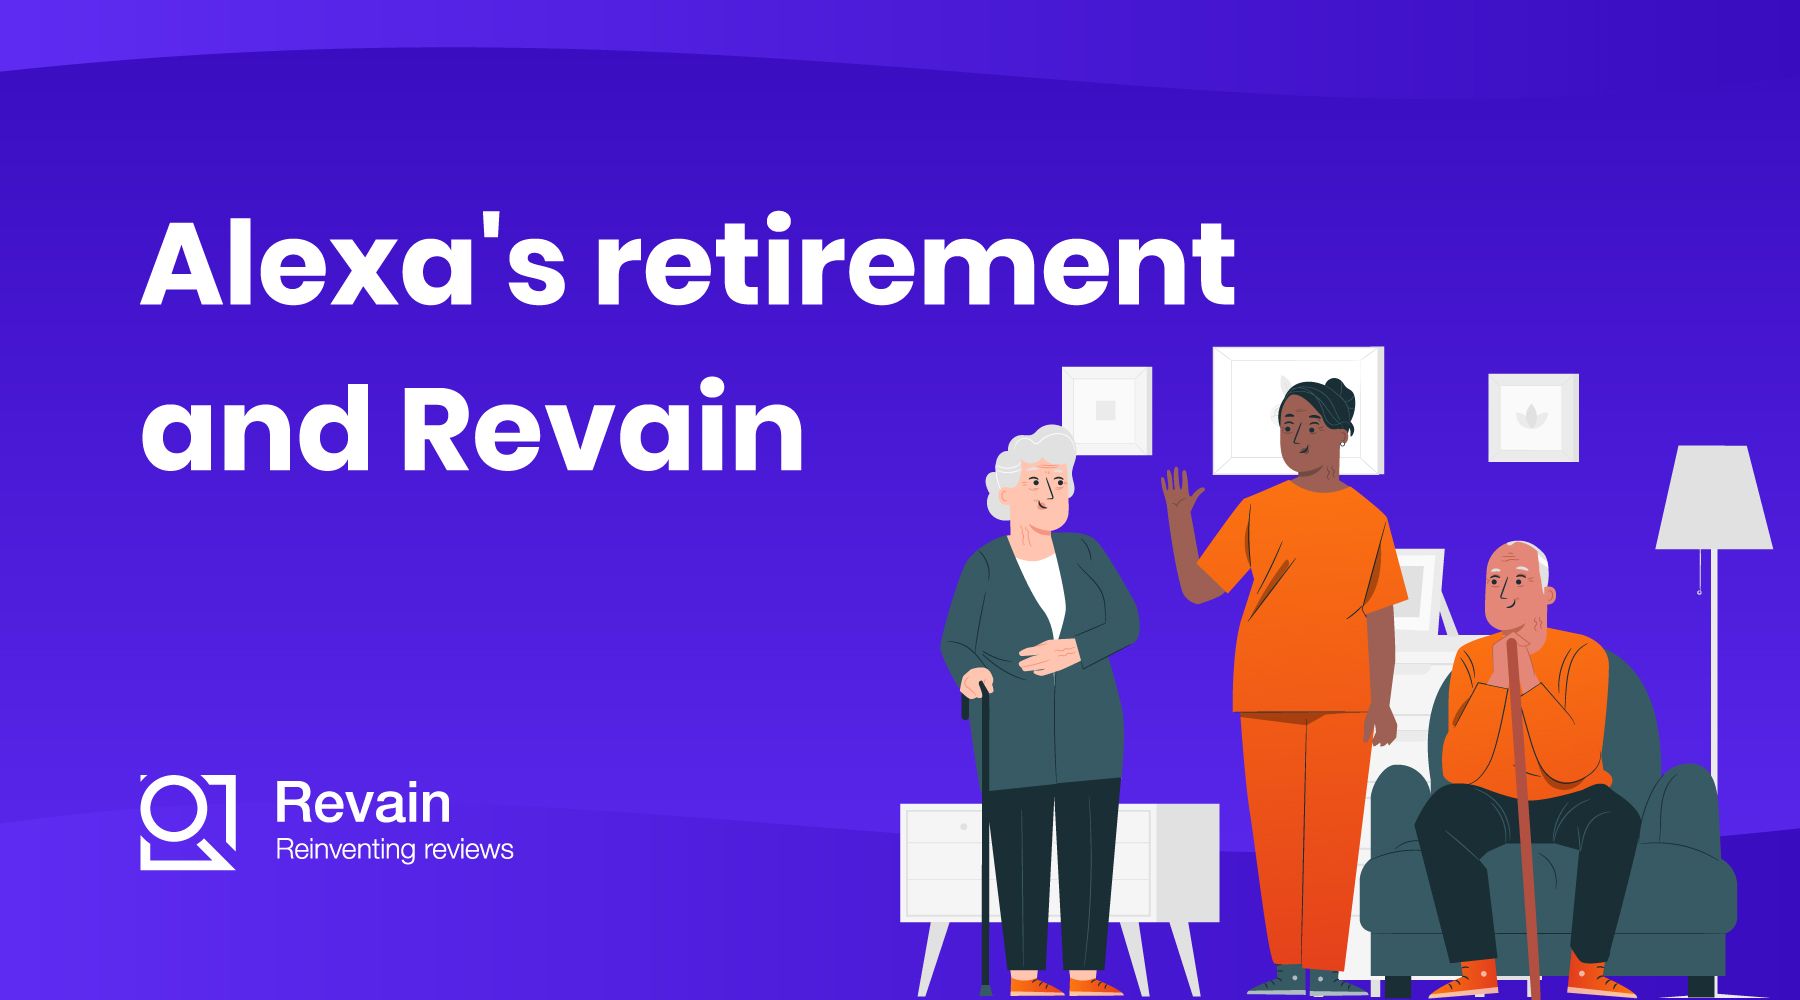 Alexa’s retirement and Revain